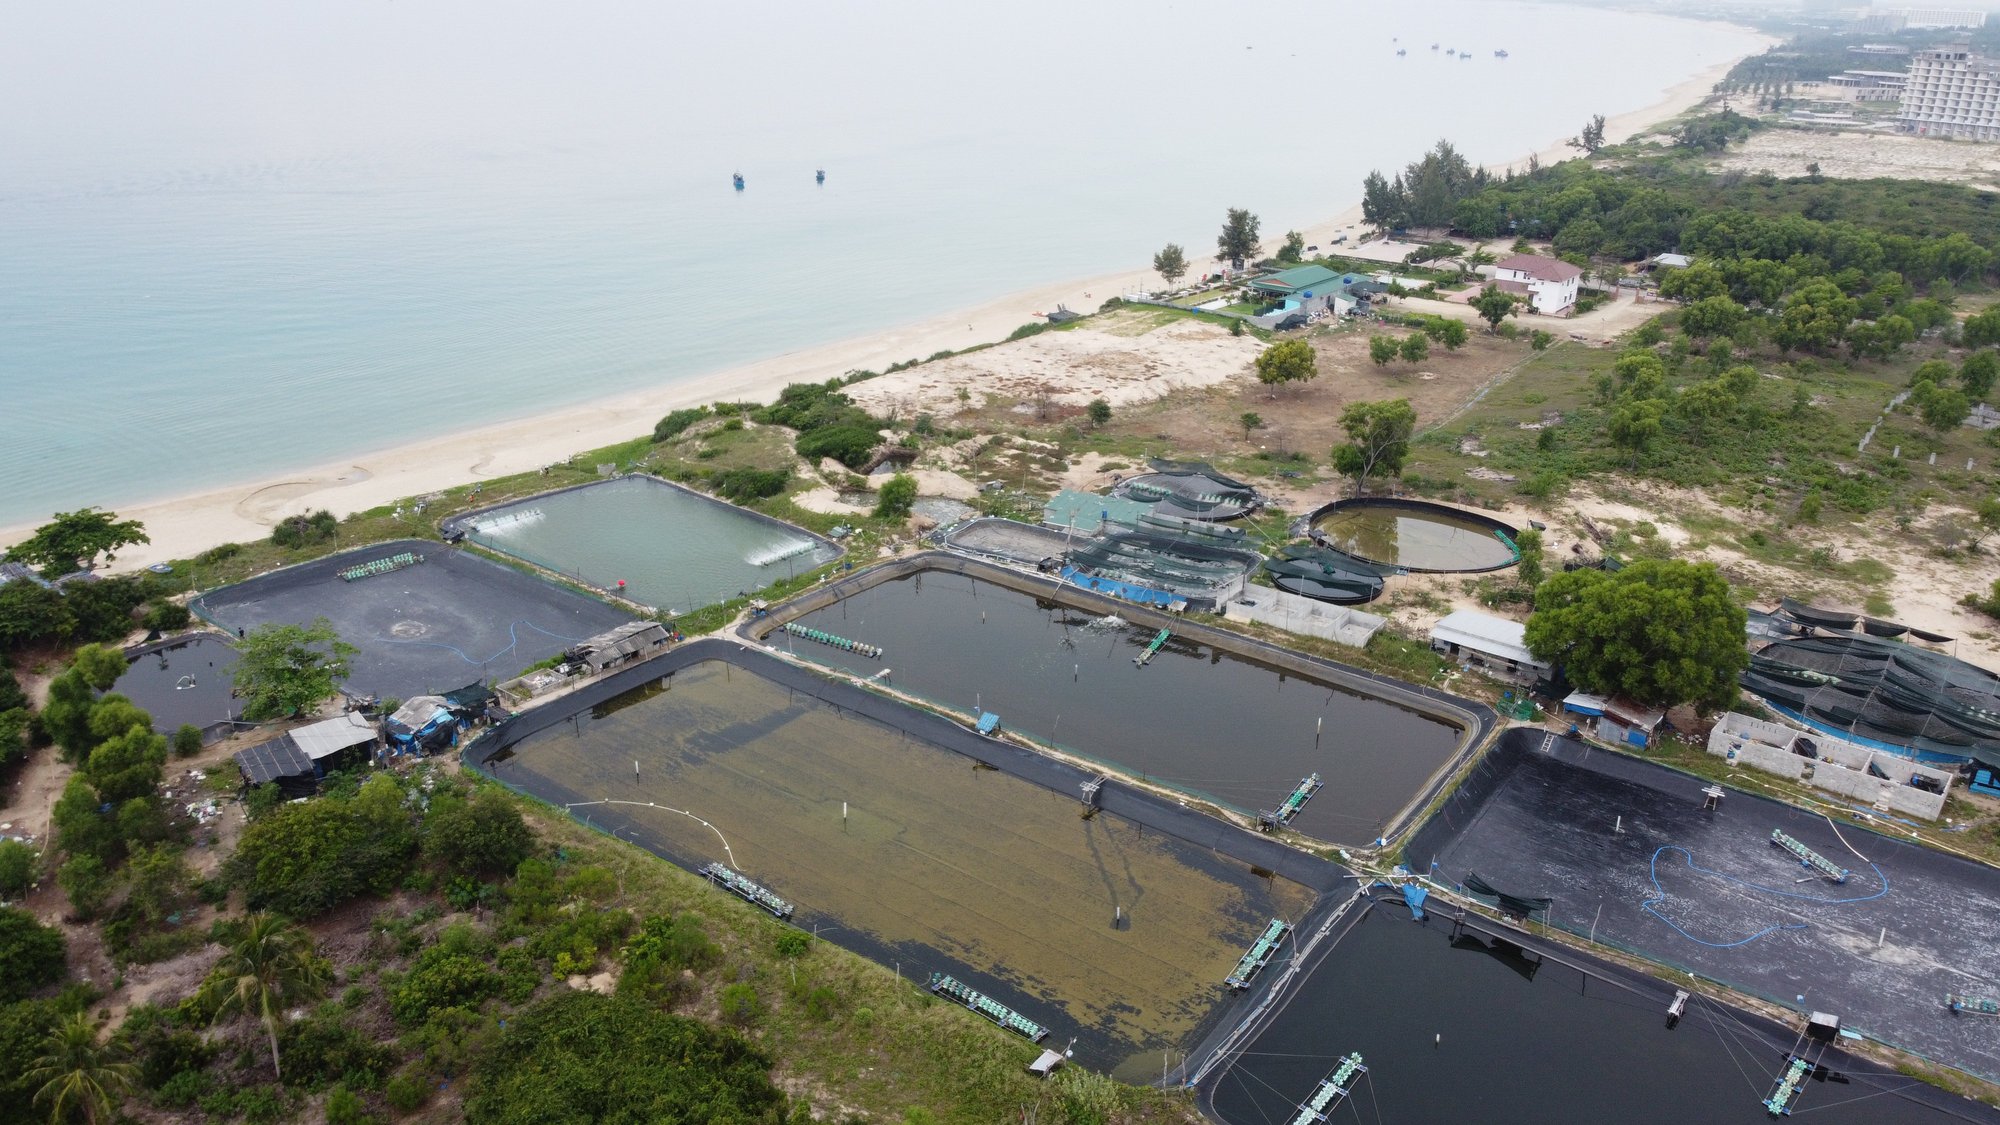 Khám phá hình ảnh về Khánh Hòa và nước thải, bạn sẽ bất ngờ với những con tôm đen đặc biệt. Hãy cùng xem và tìm hiểu về quá trình xử lý nước thải tại đây.